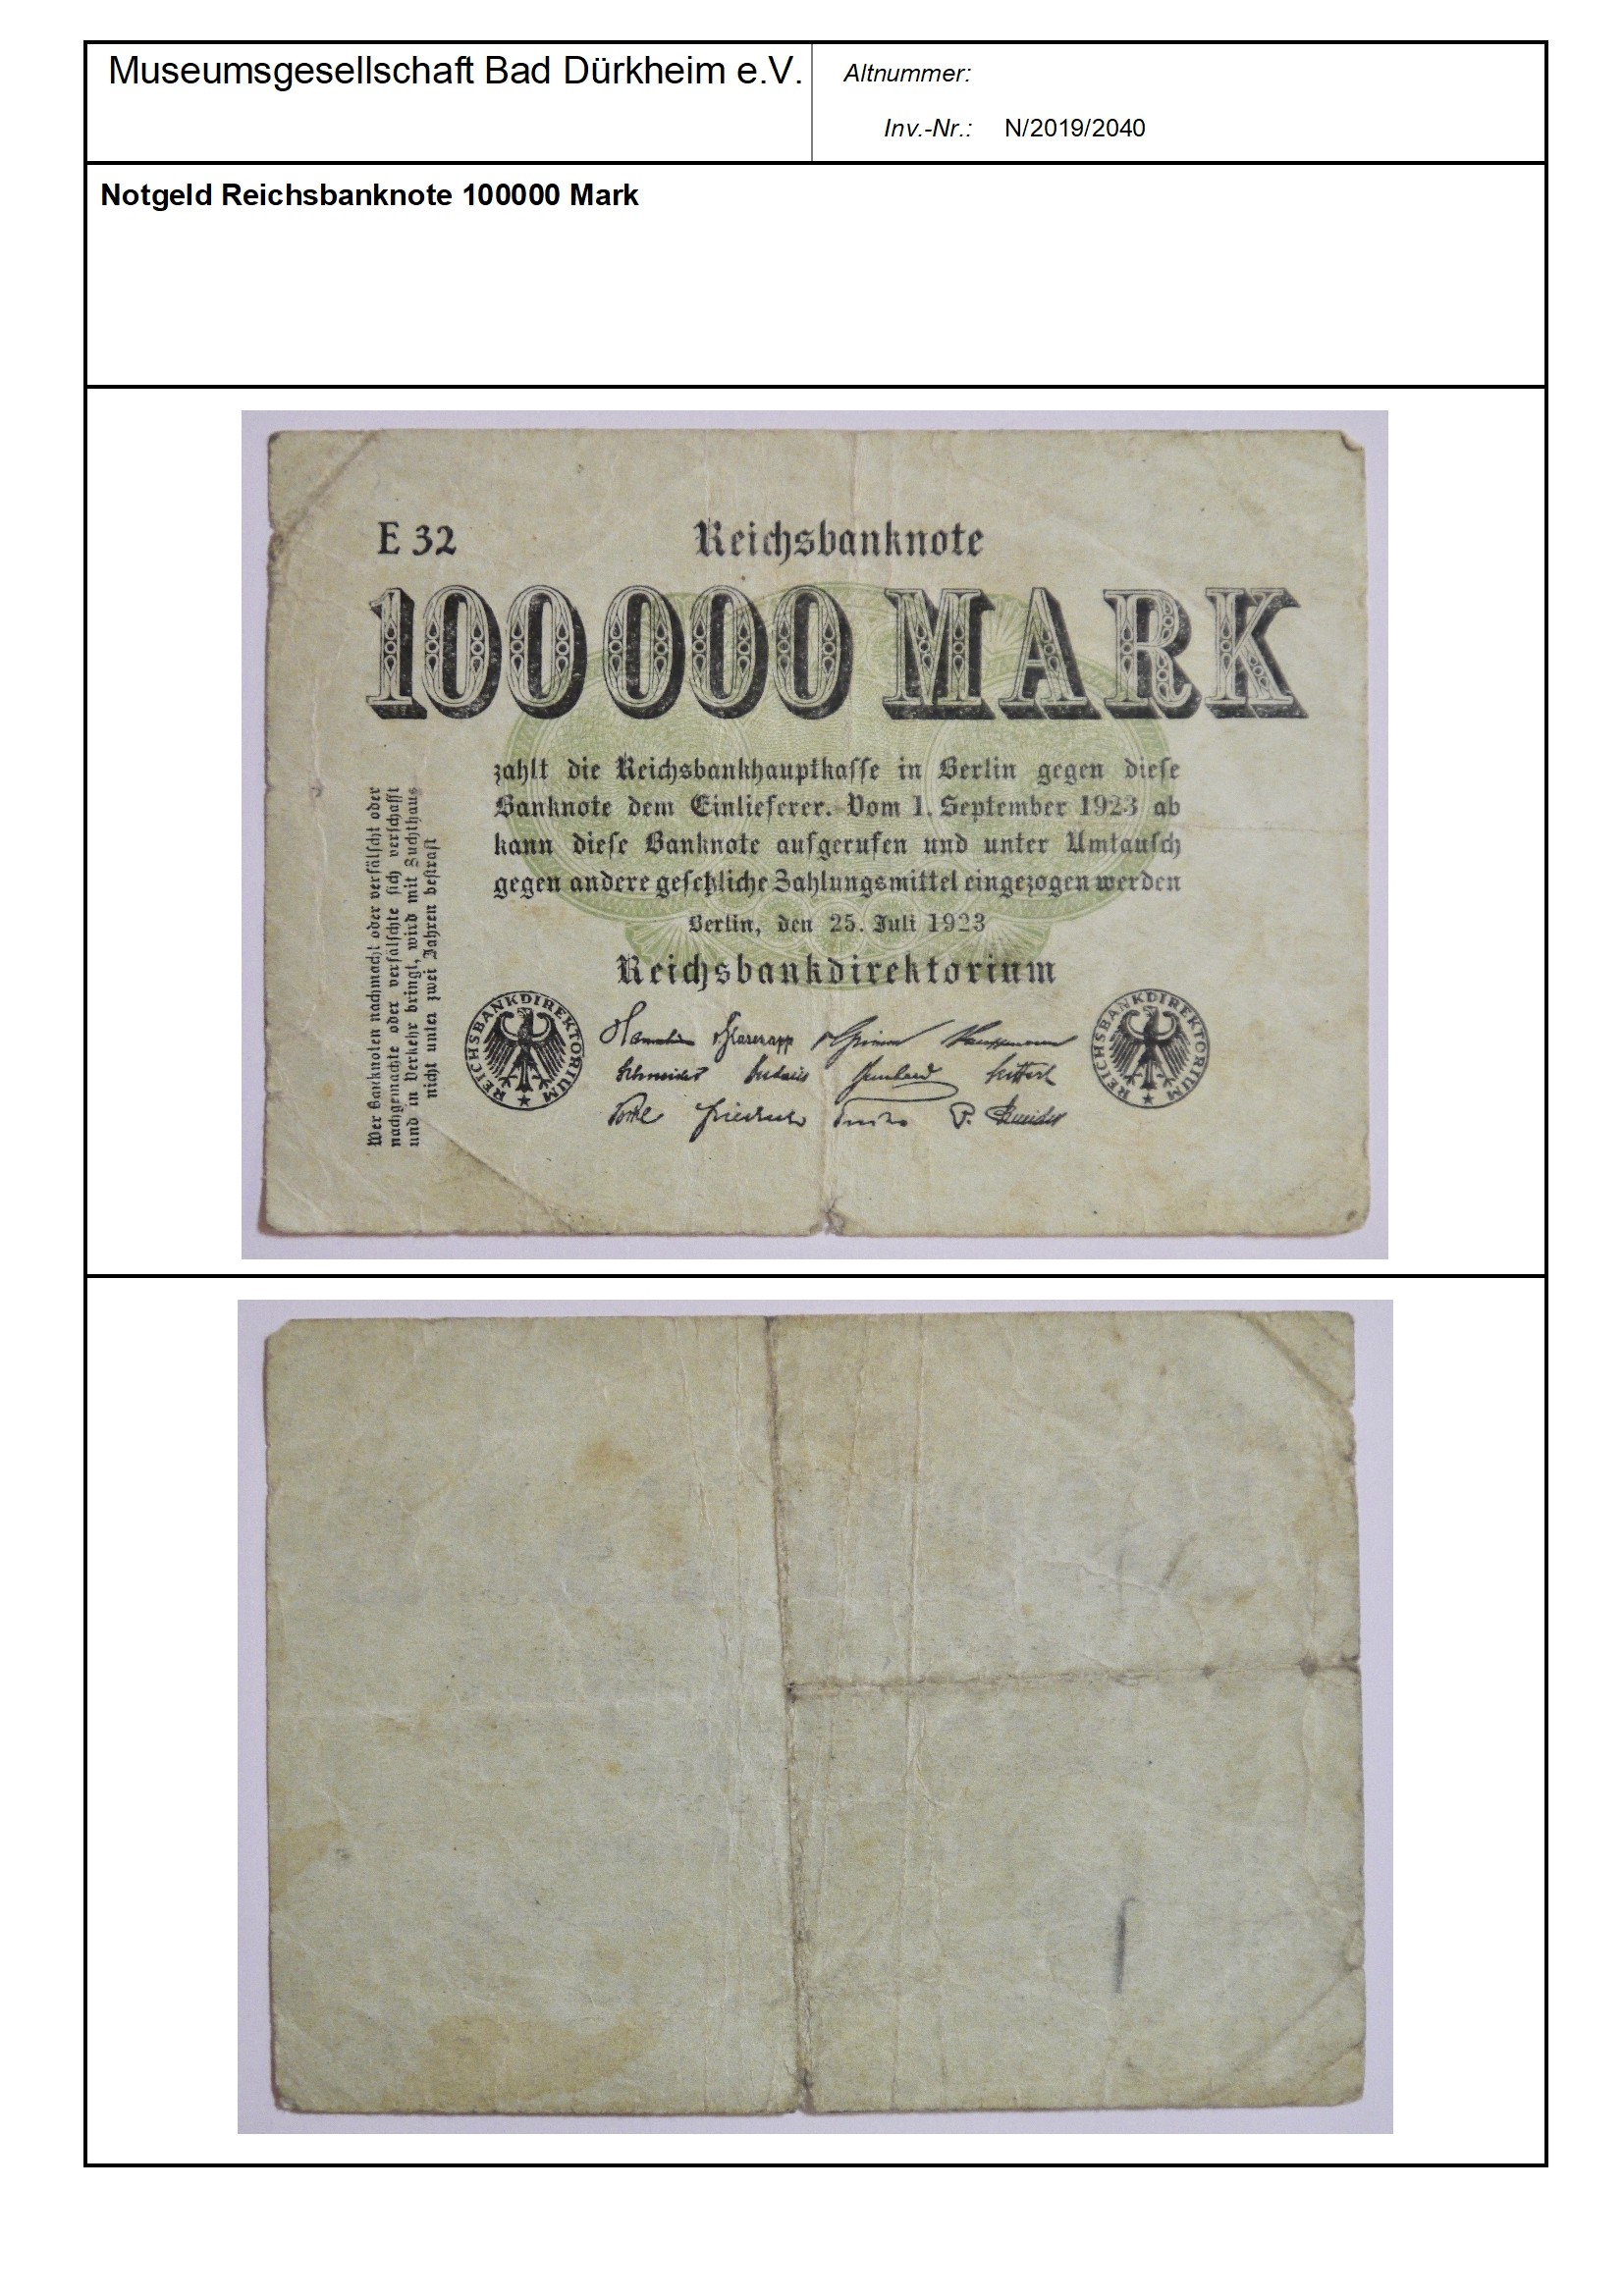 Notgeld Reichsbanknote 100000 Mark
Serien-Nummer: E 32 (Museumsgesellschaft Bad Dürkheim e.V. CC BY-NC-SA)